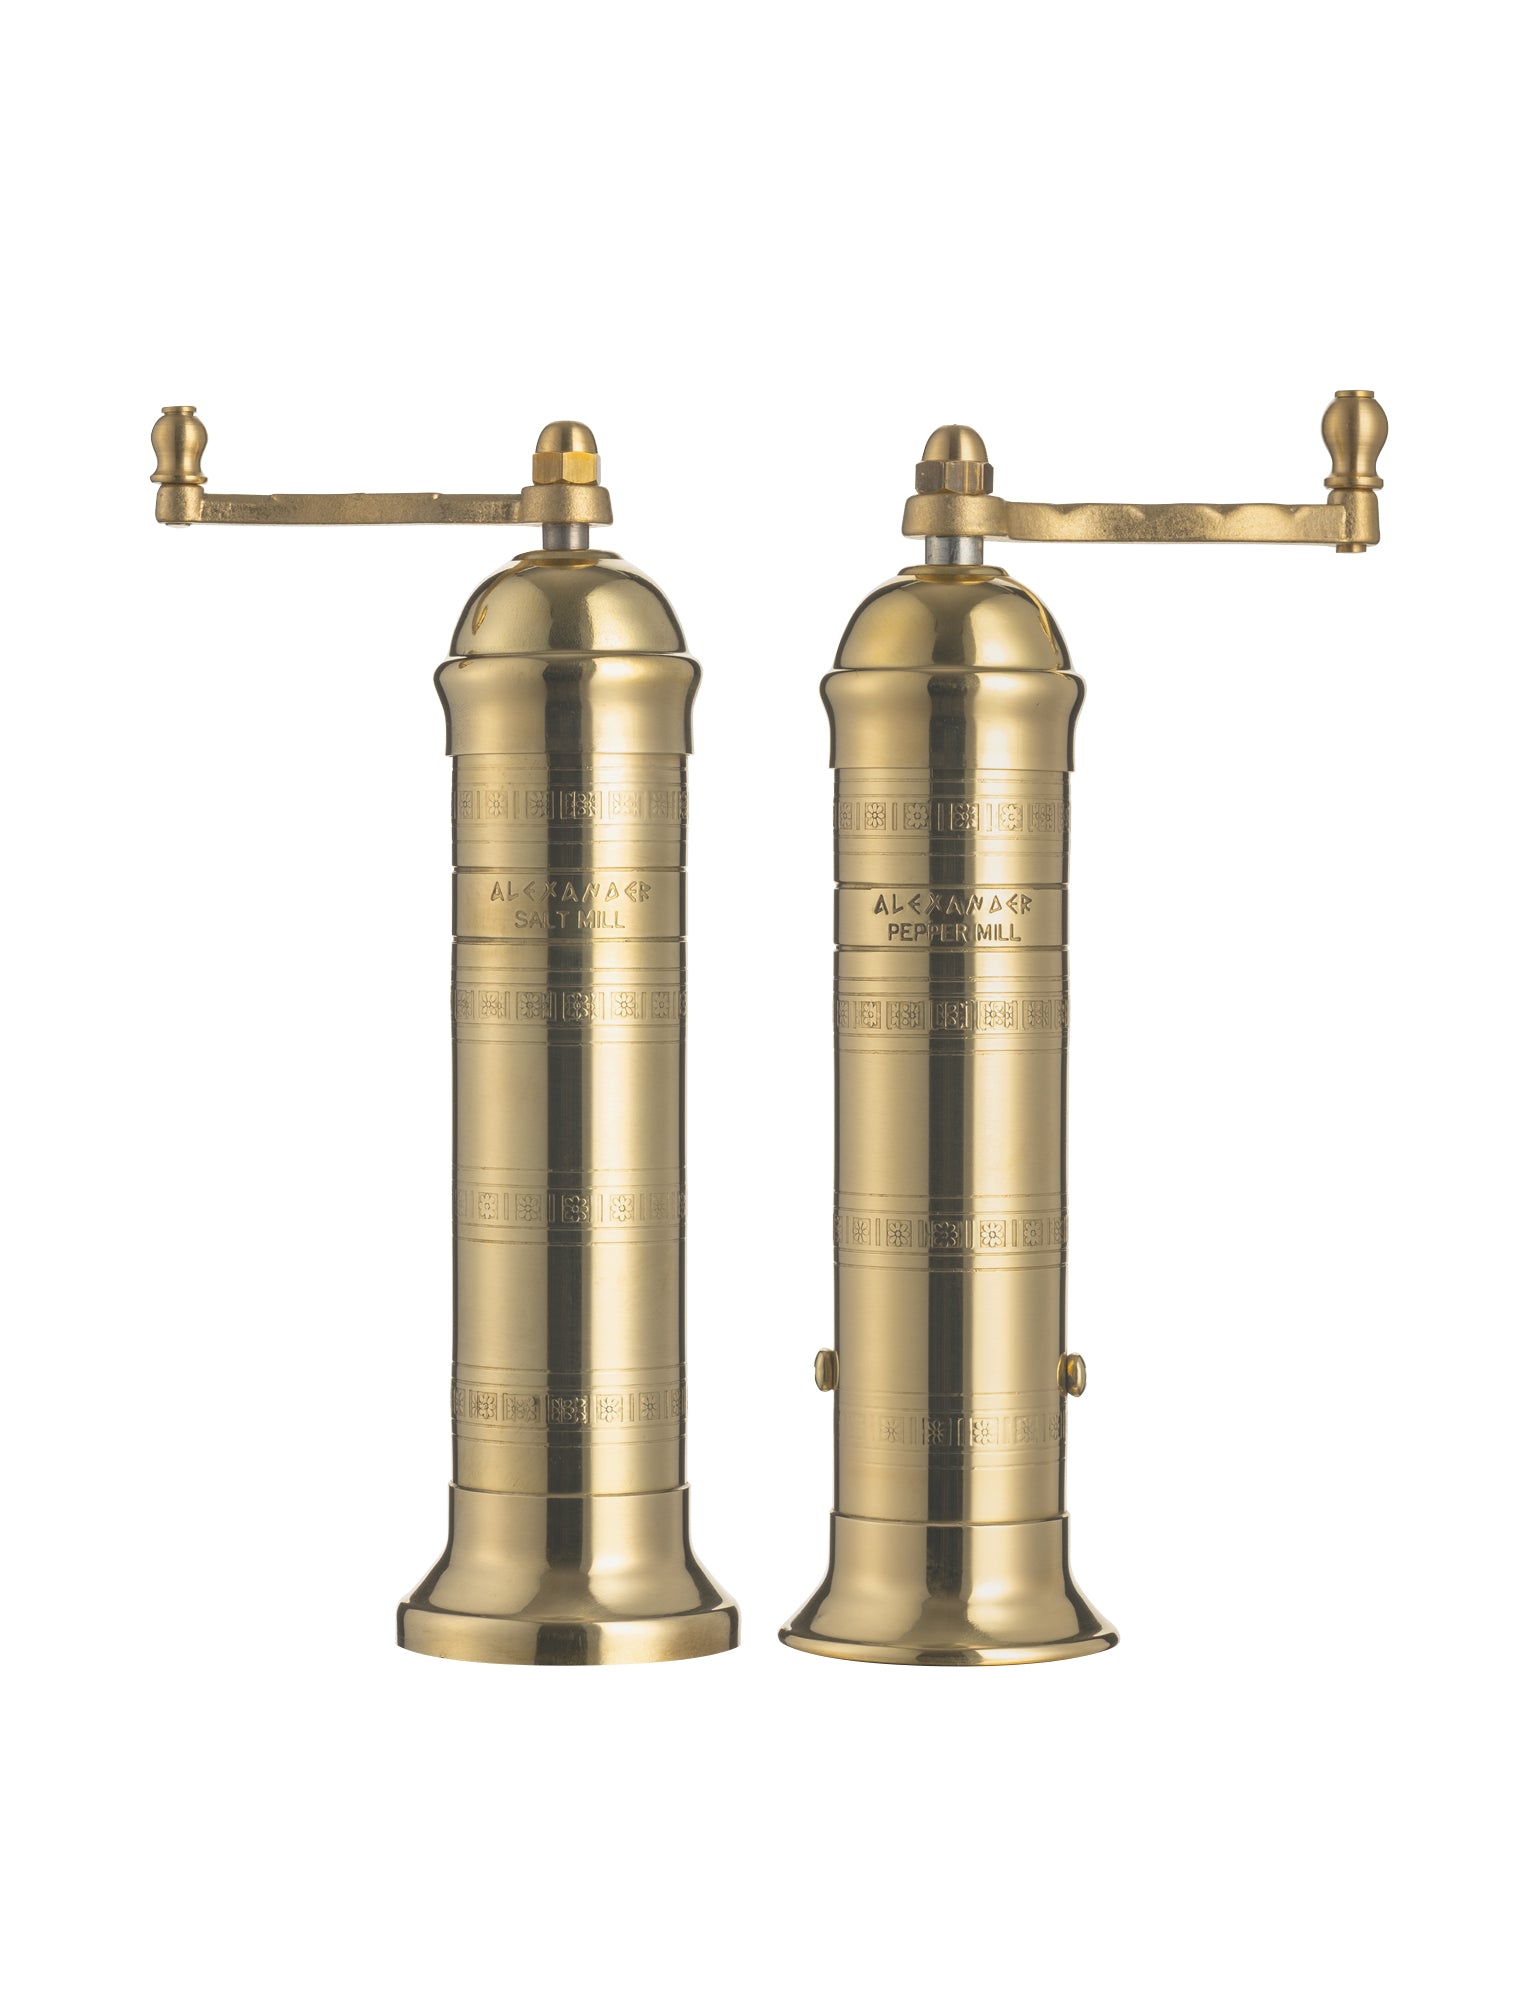 brass mill grinder